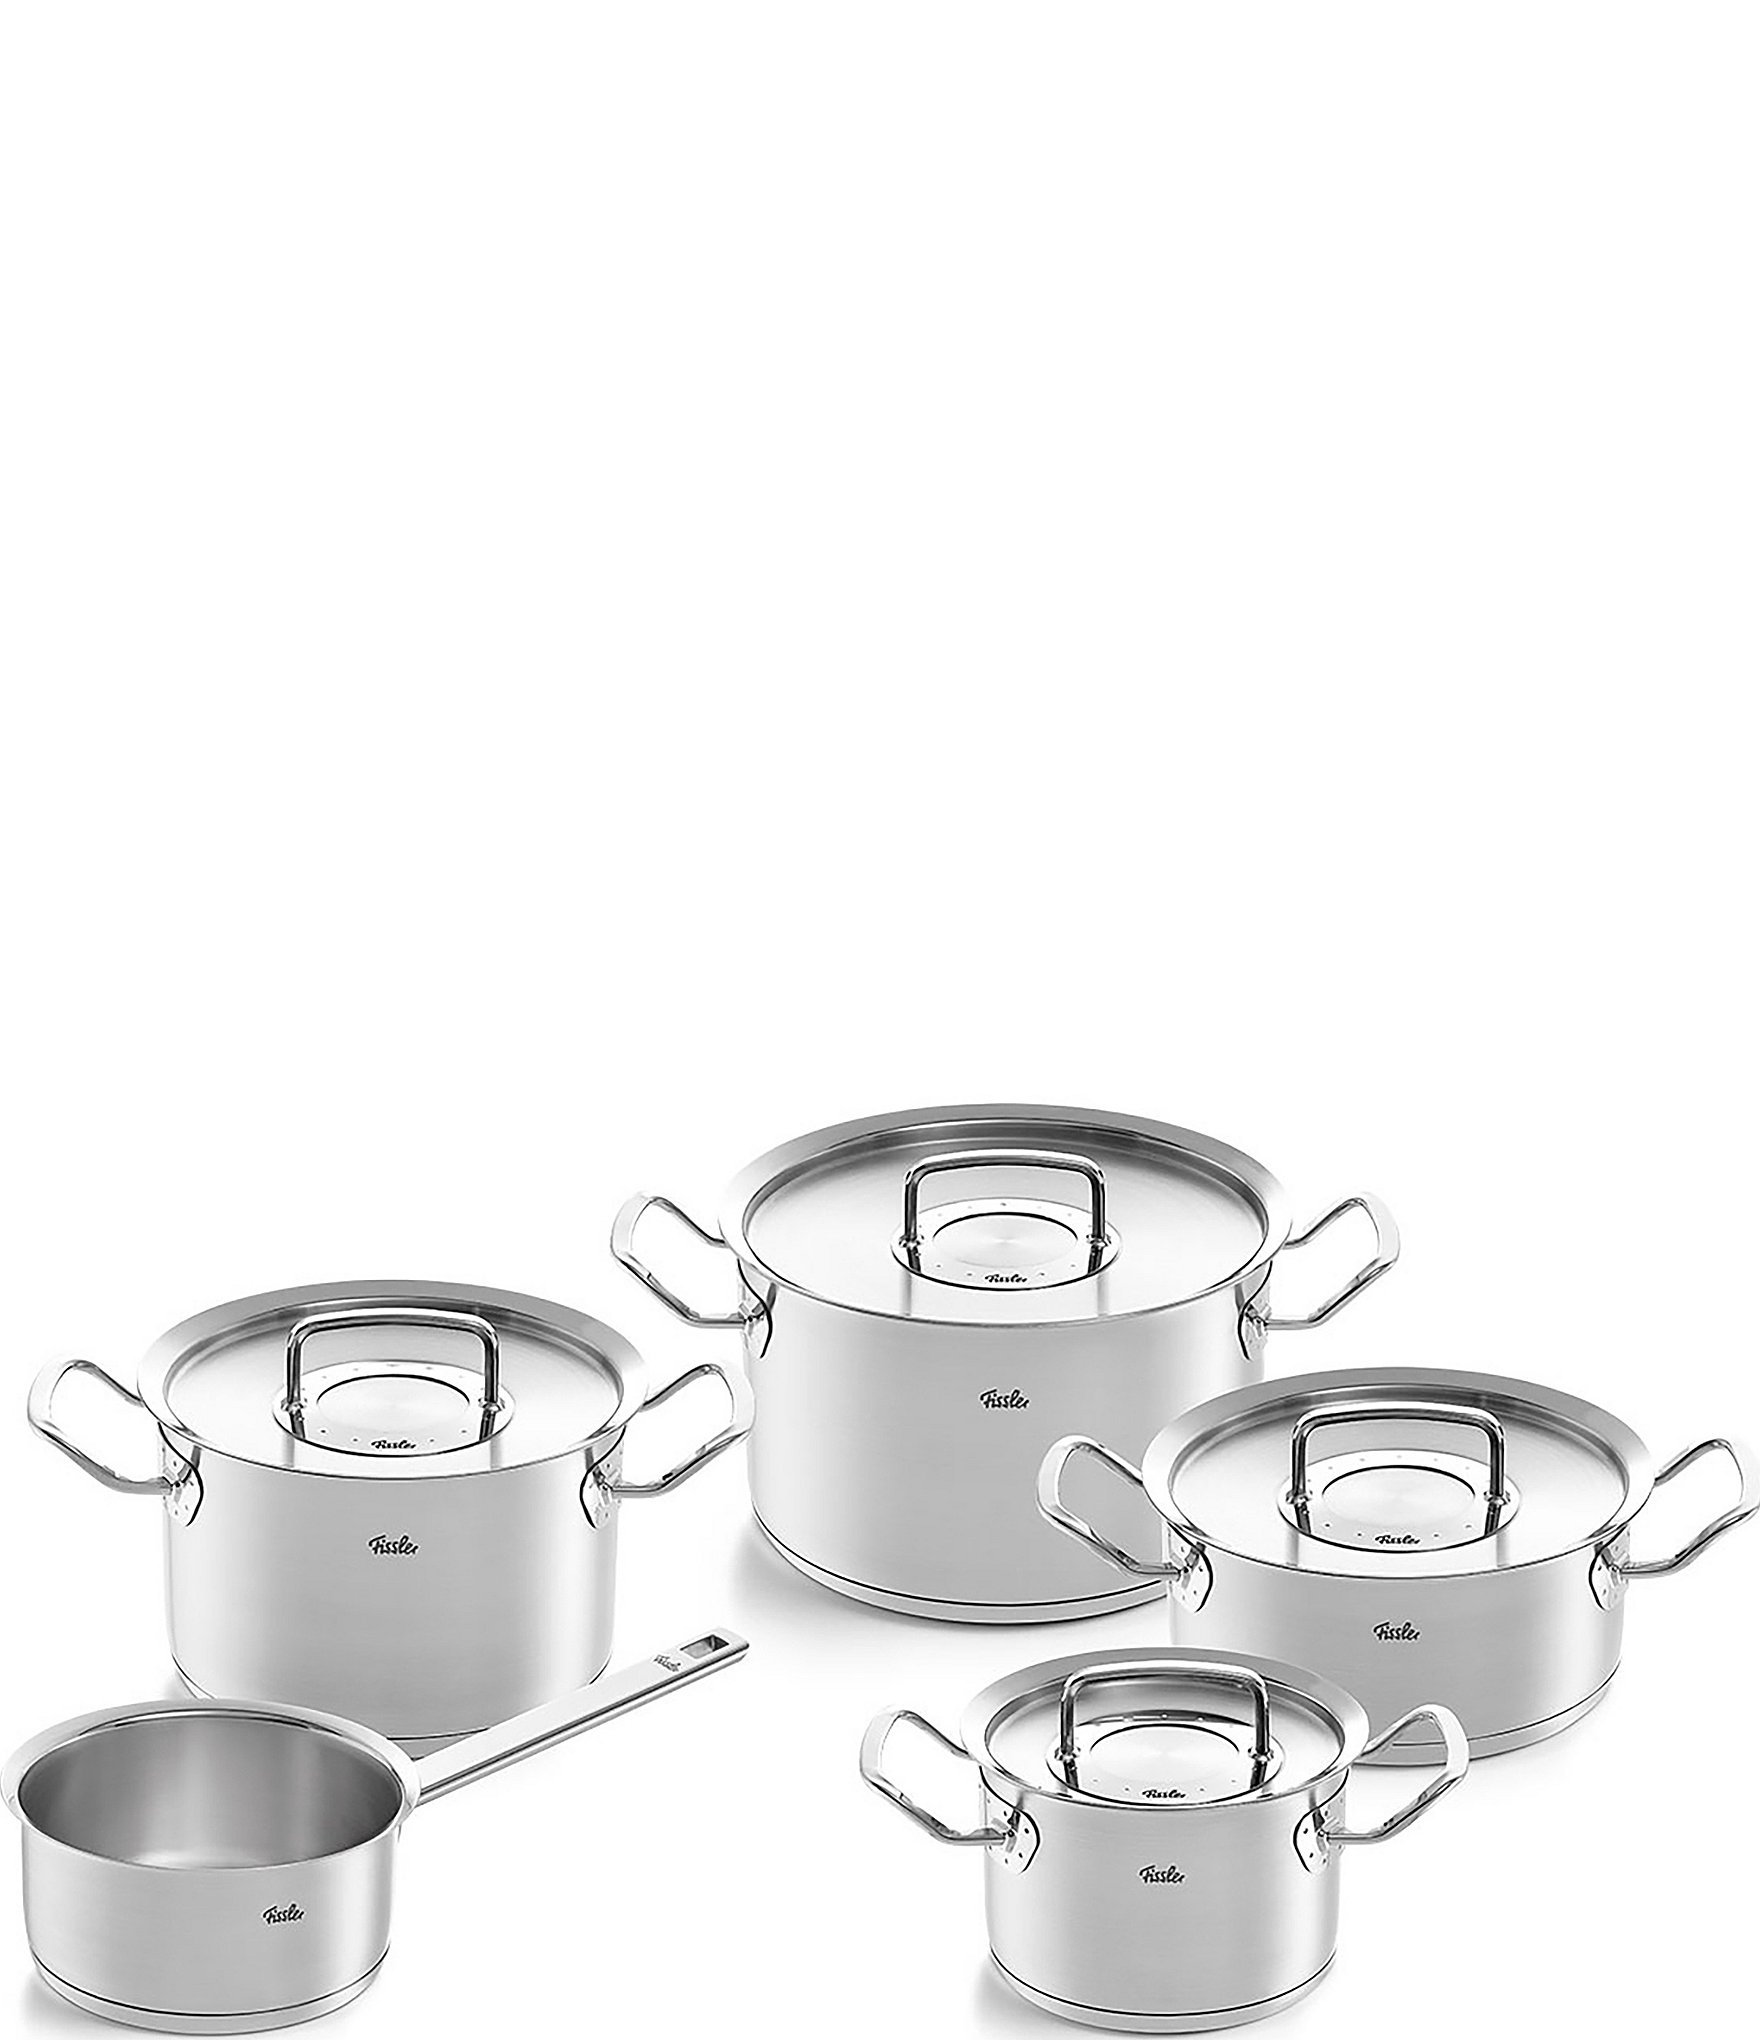 Fissler OriginalProfi Collection Stainless Steel 9Piece Cookware Set